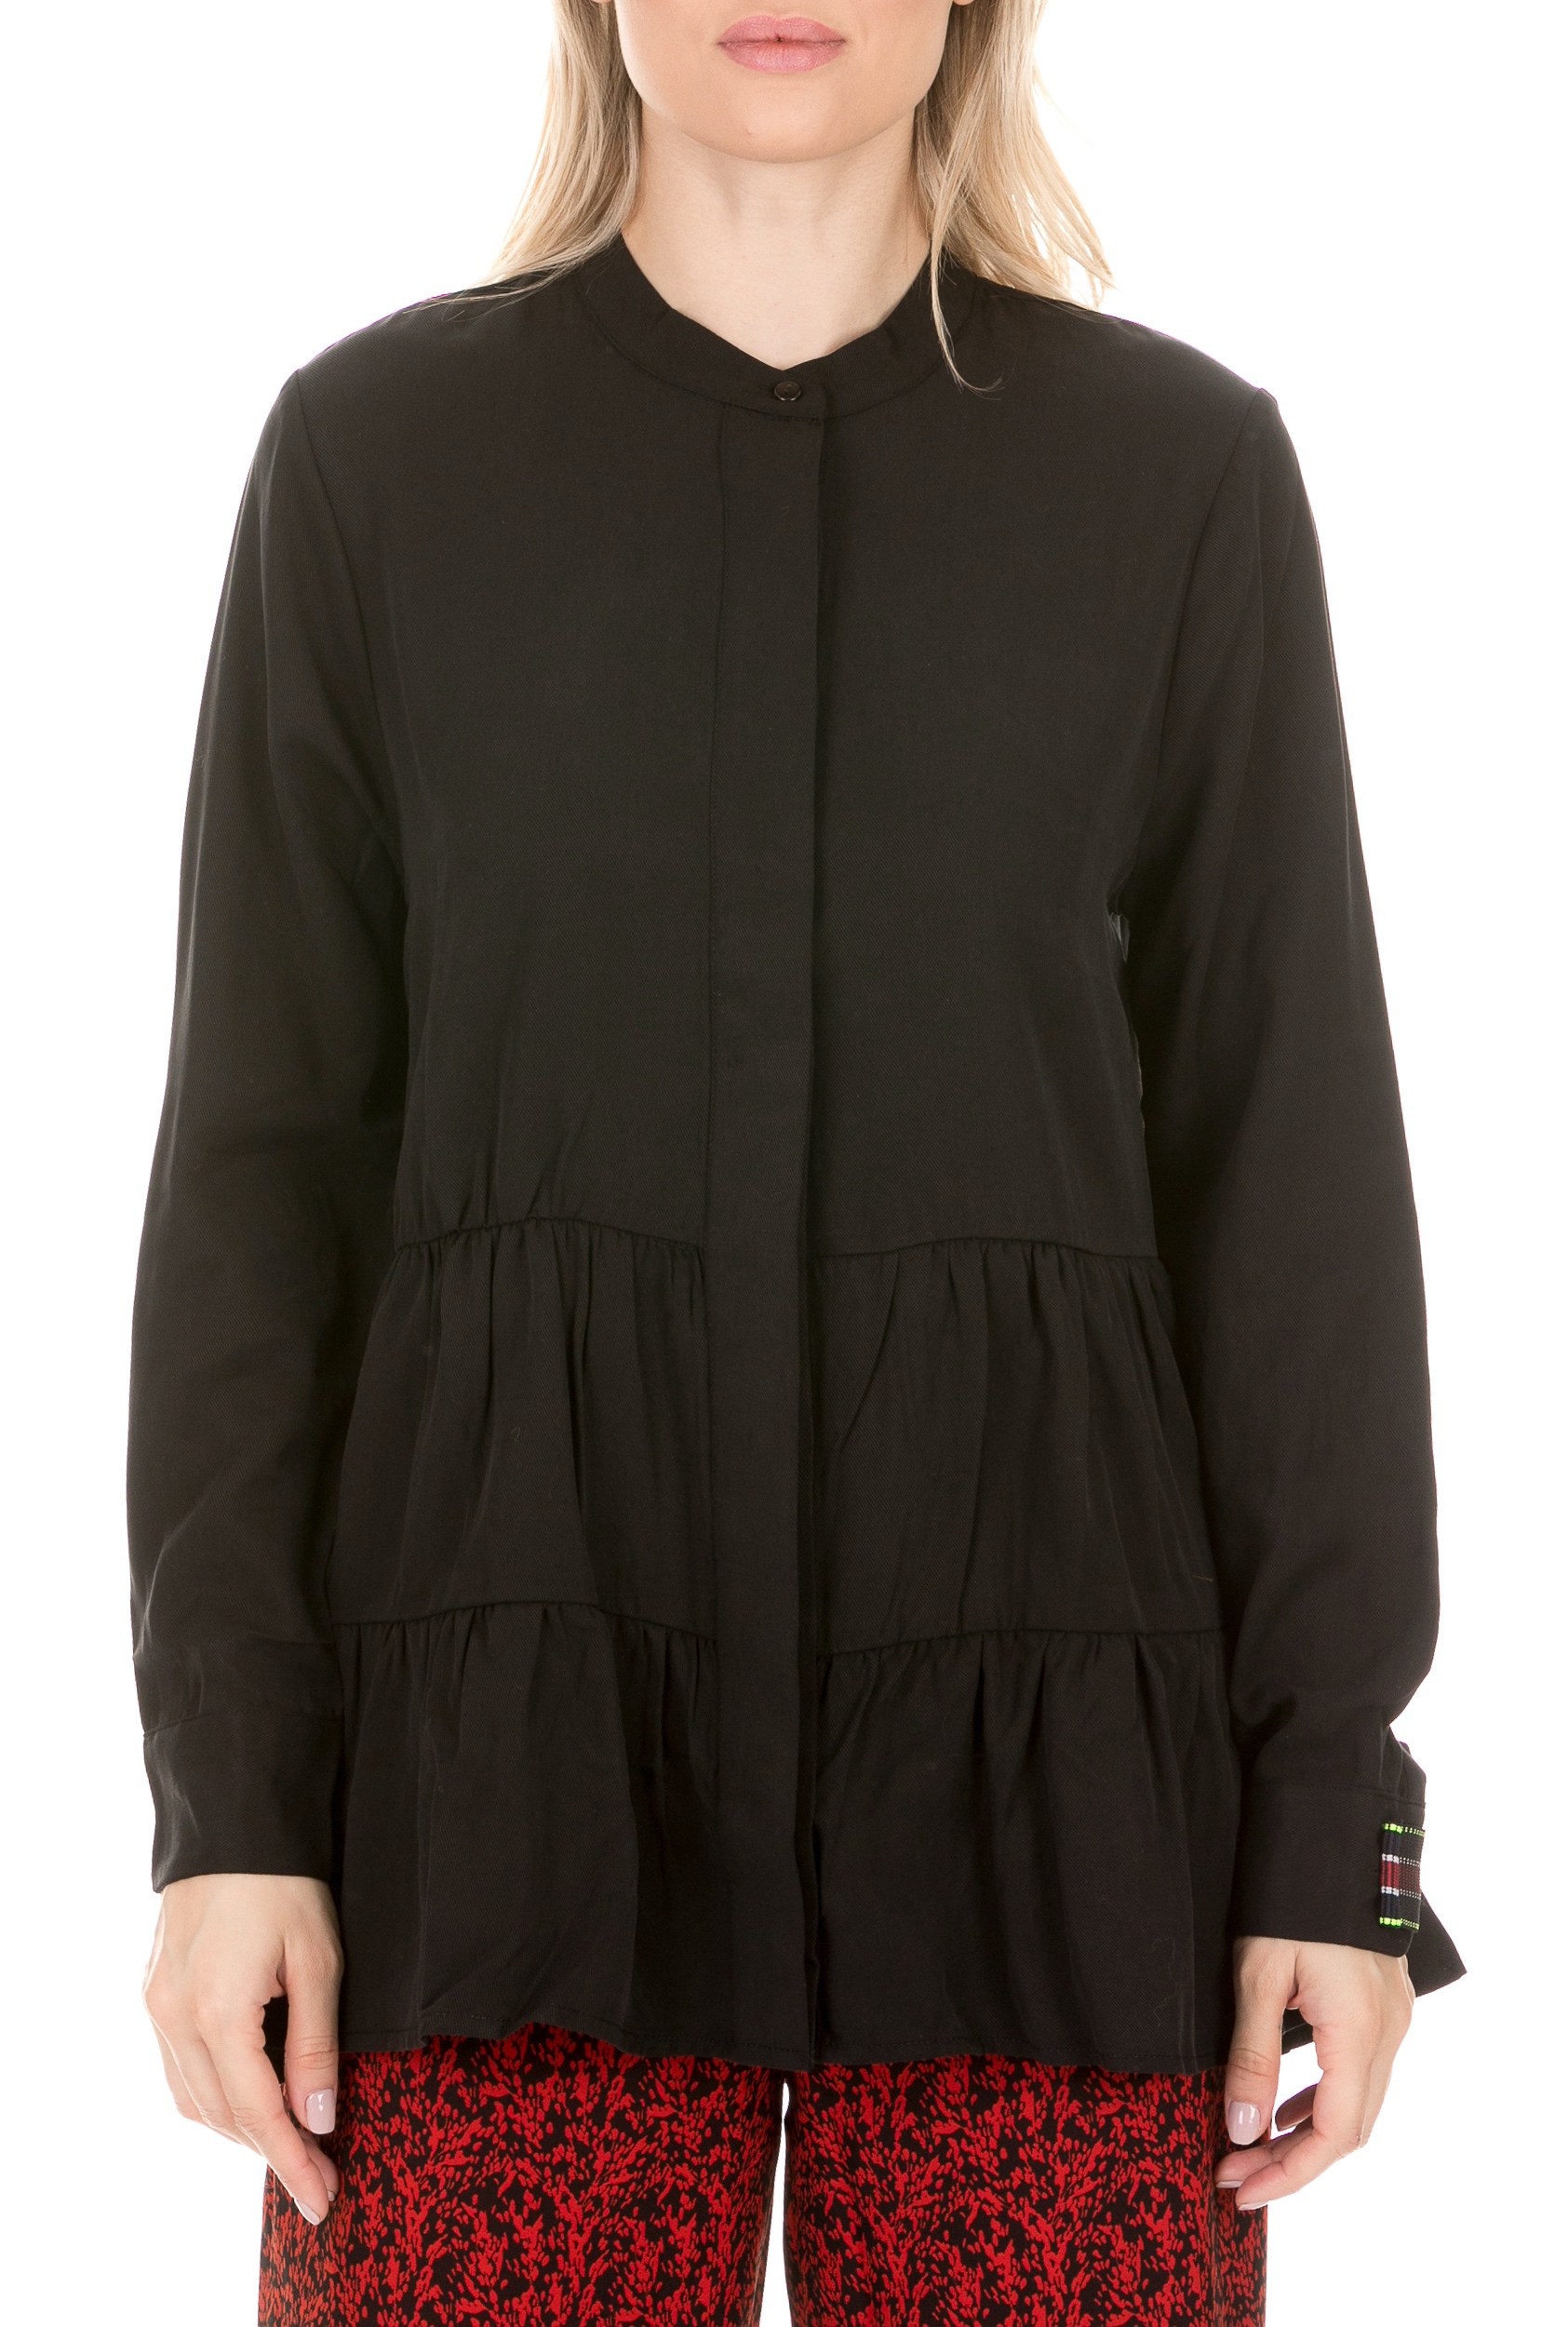 Γυναικεία/Ρούχα/Πουκάμισα/Μακρυμάνικα COTTON CANDY - Γυναικείο πουκάμισο COTTON CANDY PREMIUM SELECTION μαύρο